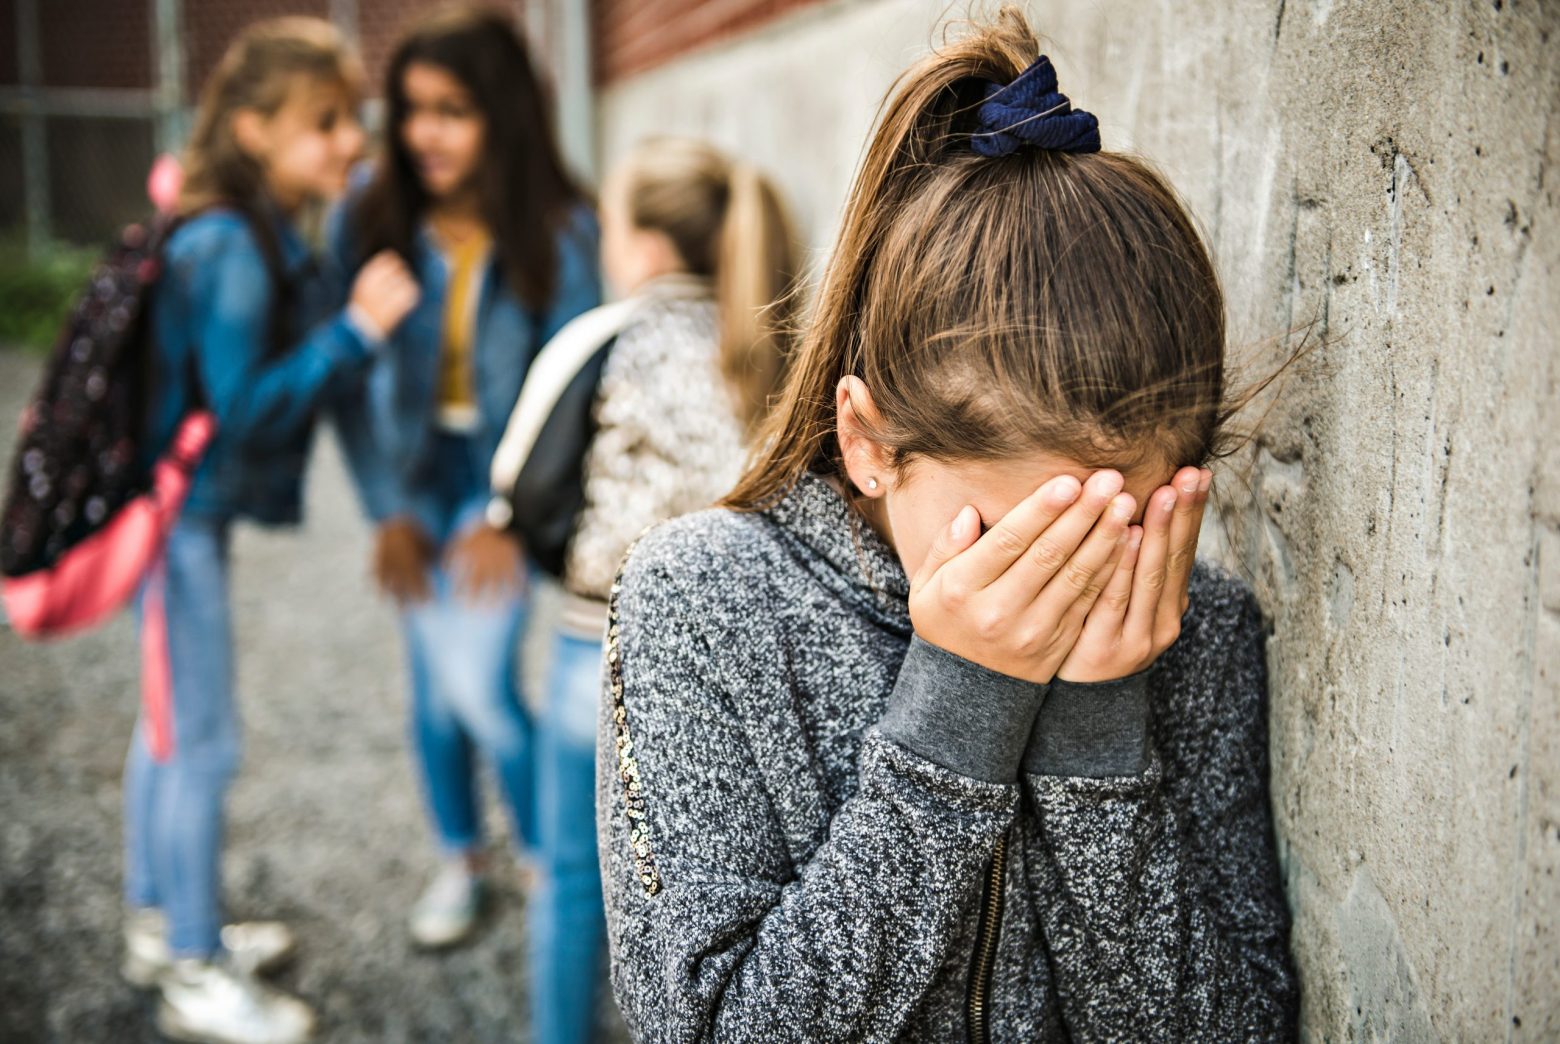 Σεπόλια: Δεκατετράχρονη θύμα bullying από συμμαθητές της - «Με χτυπούσαν με βρίζανε»